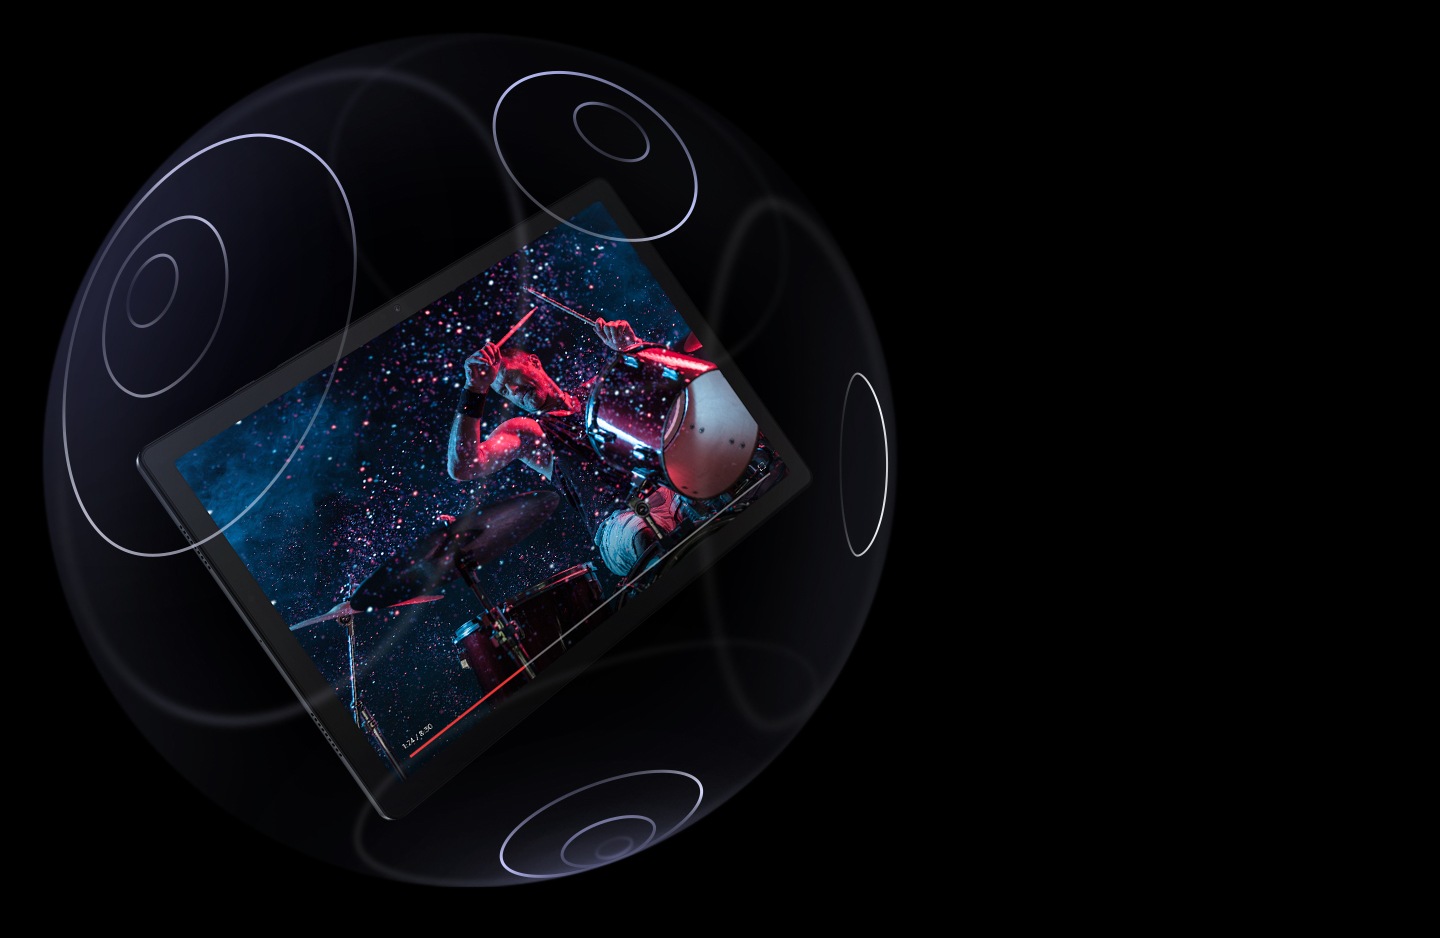 La Galaxy Tab A8 est montrée flottante à l'intérieur d'une sphère transparente dont la surface est marquée de cercles concentriques. L'écran montre un homme jouant de la batterie, avec une barre de progression en bas.